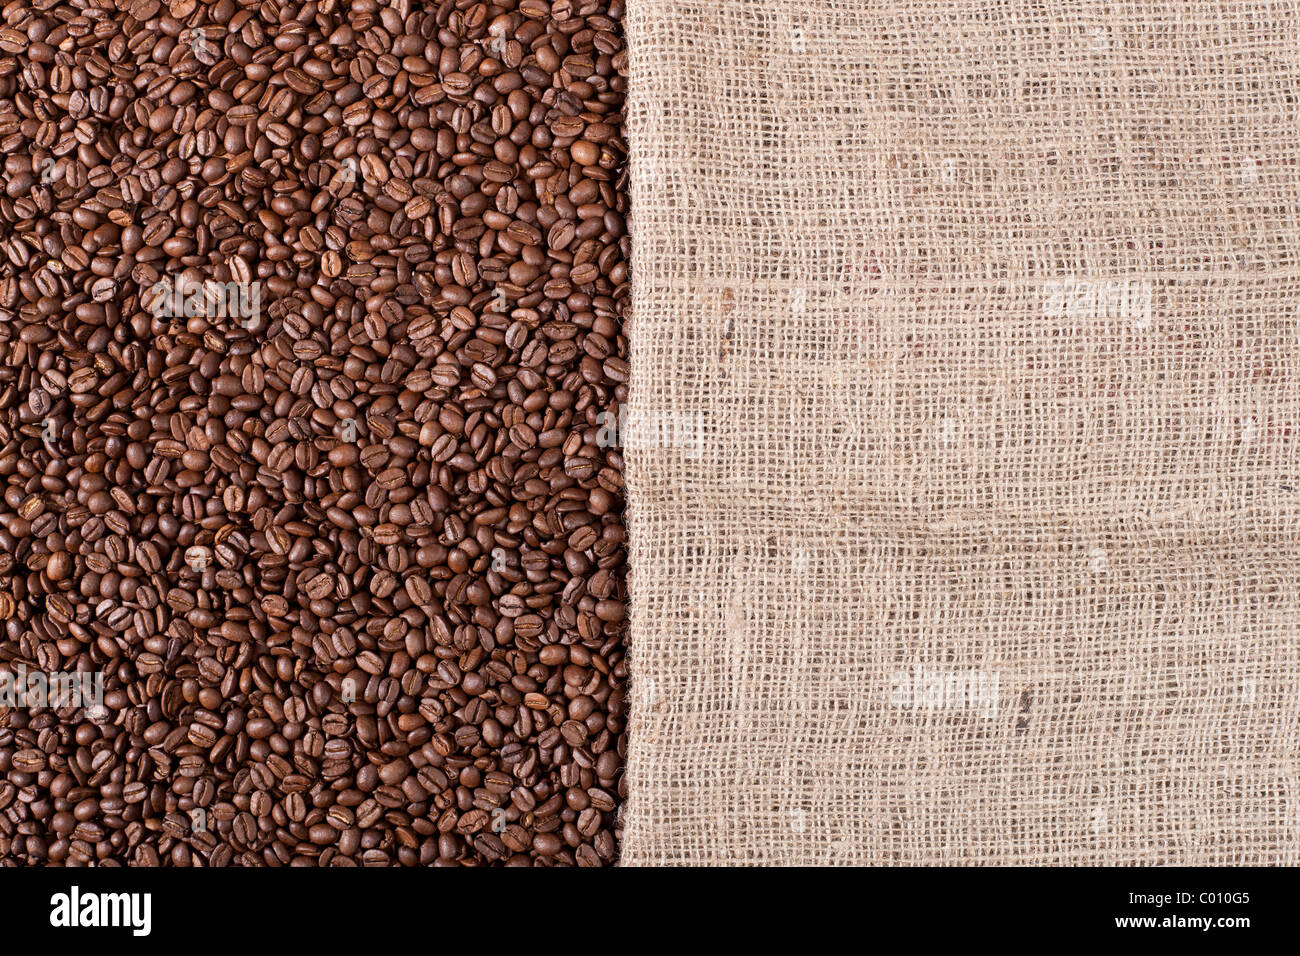 Hintergrundbild von vielen Kaffeebohnen und meschotschek Leinwand füllen das Bild Stockfoto